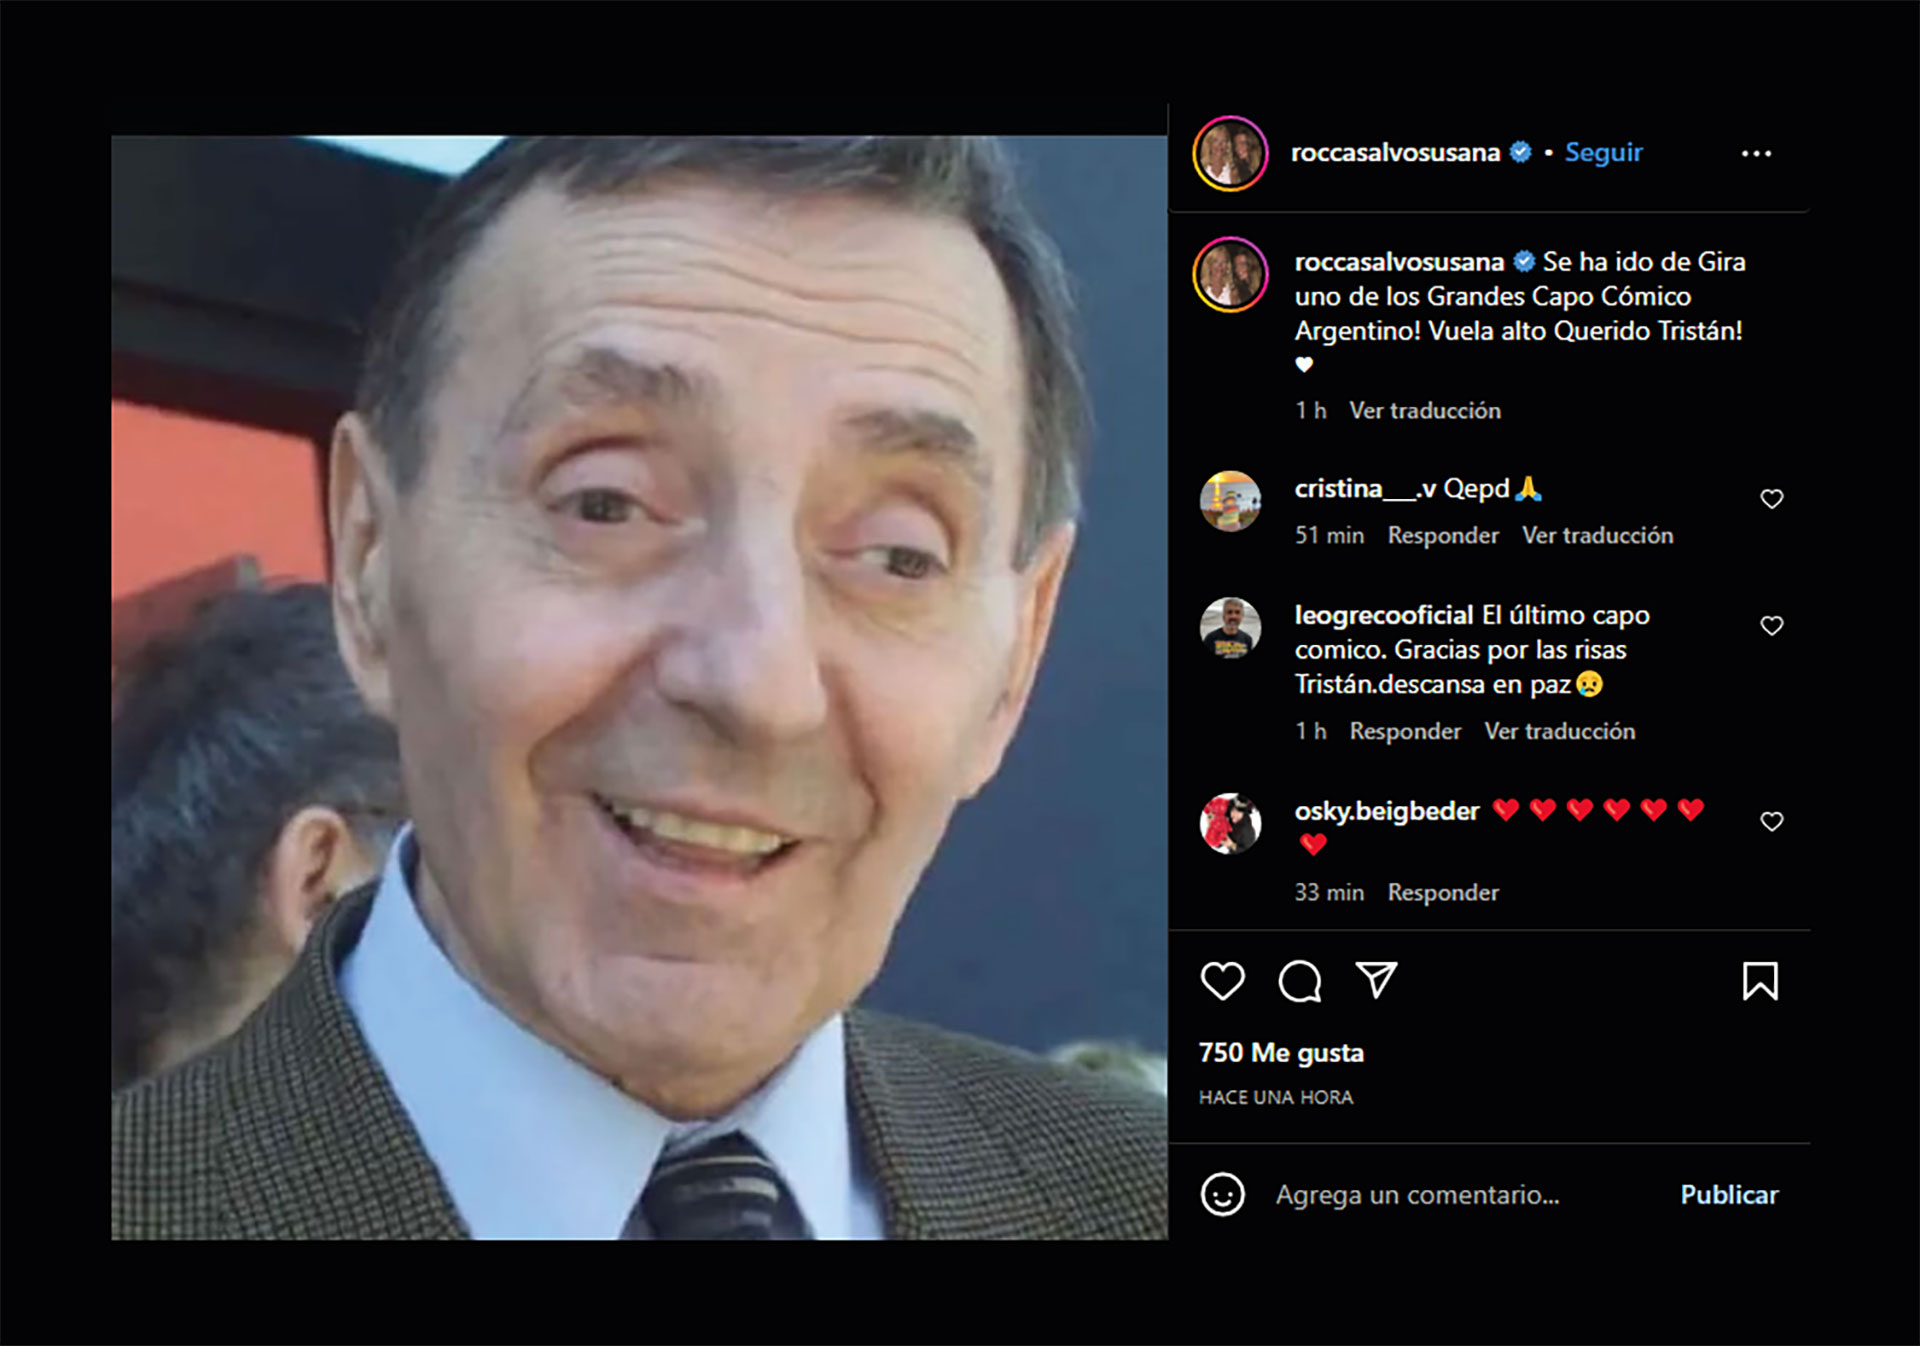  Susana Roccasalvo despidió a Tristán en Instagram